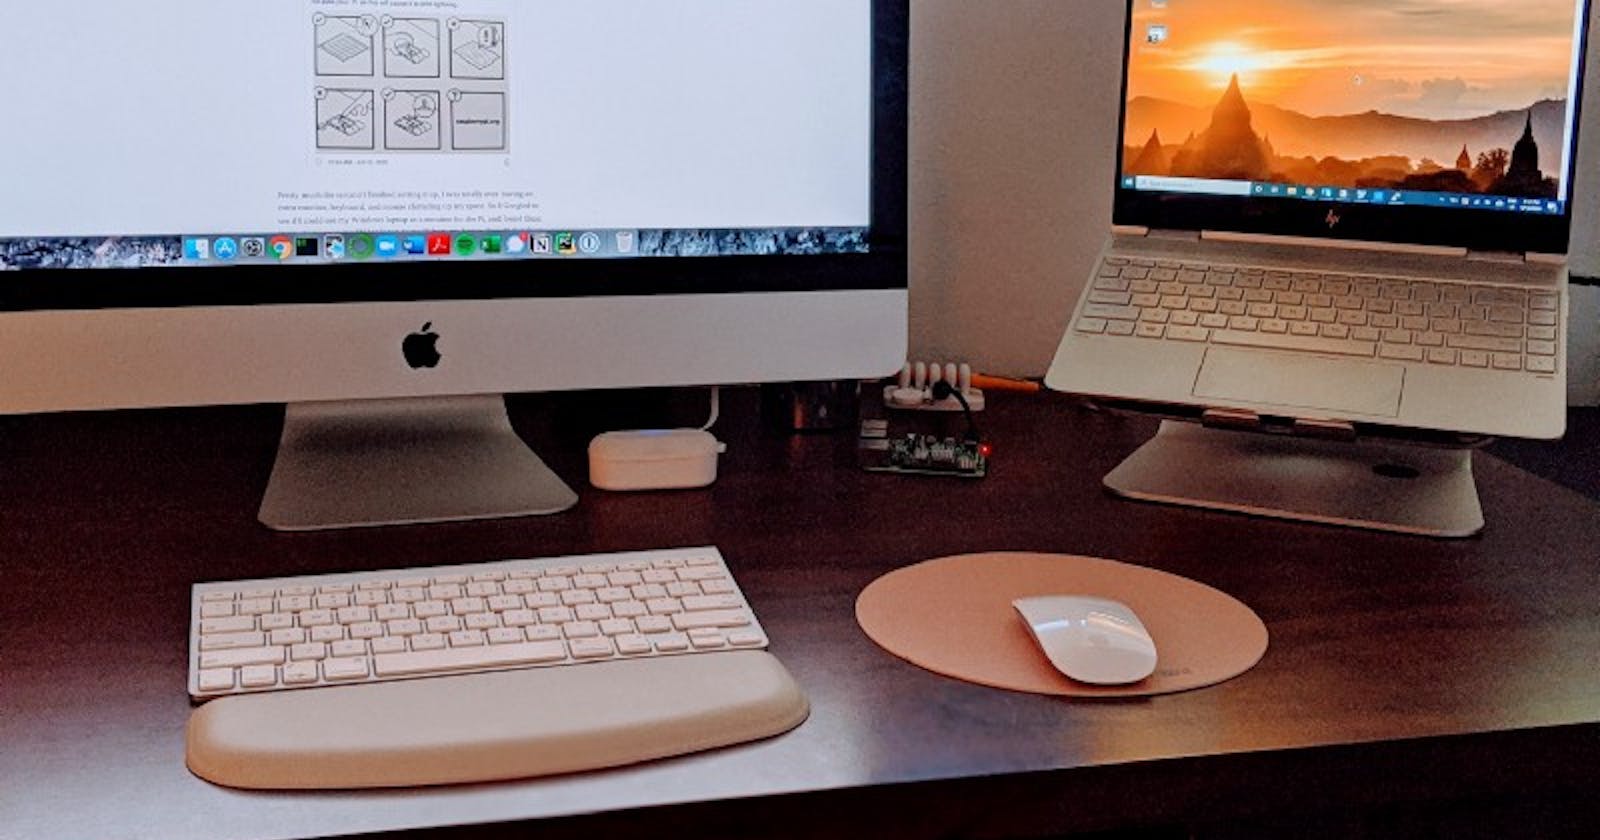 Mac + Windows + Pi = One Keyboard